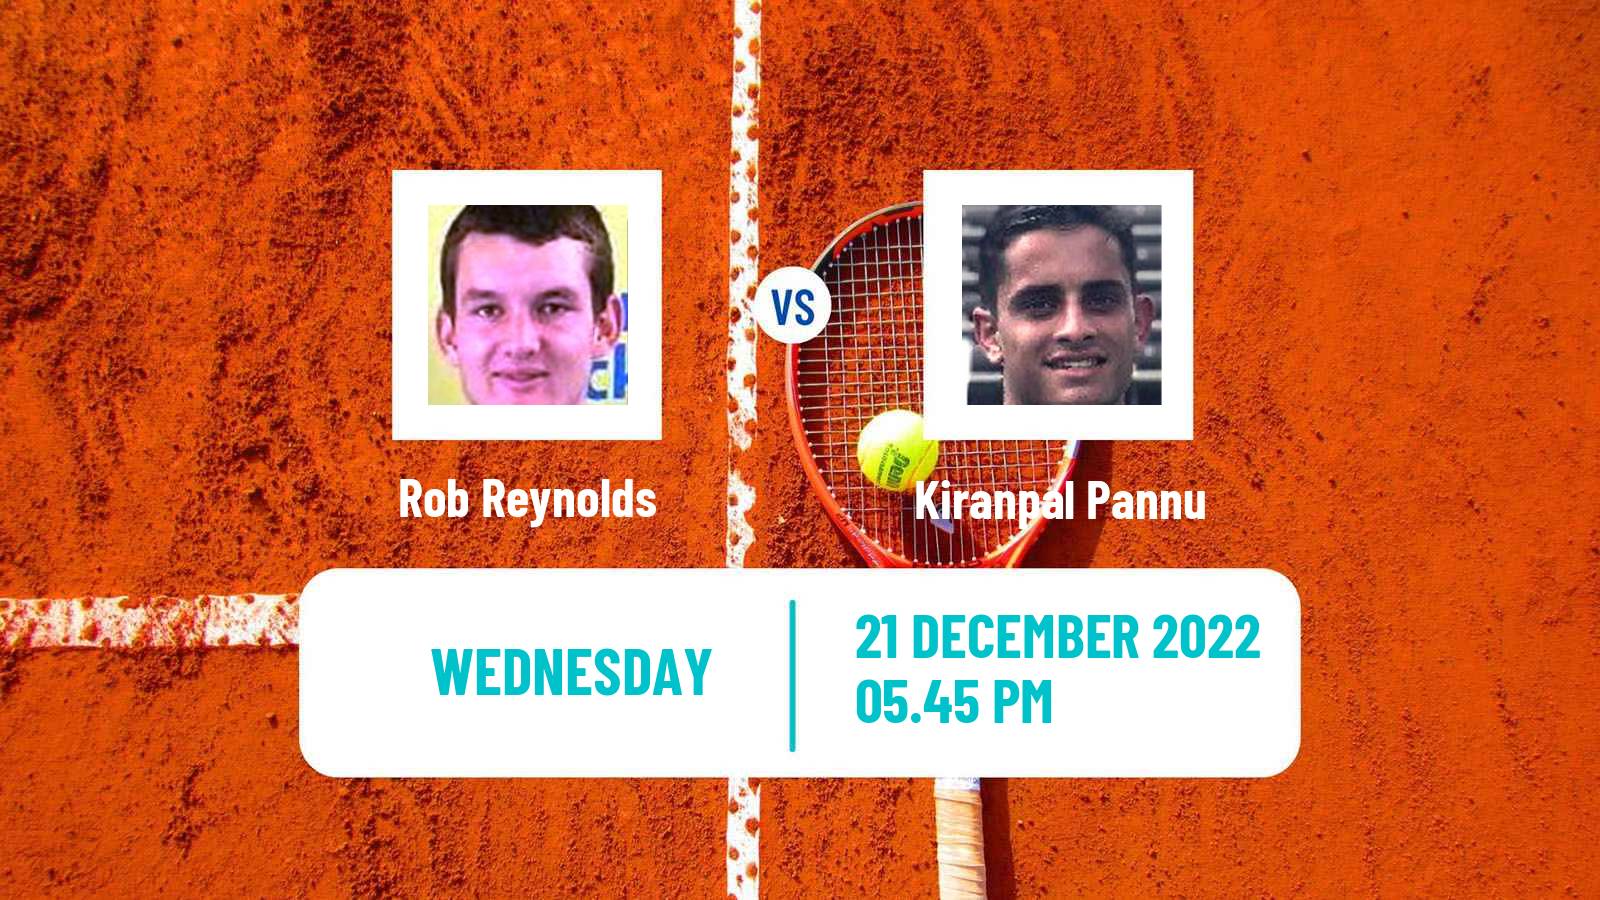 Tennis ITF Tournaments Rob Reynolds - Kiranpal Pannu